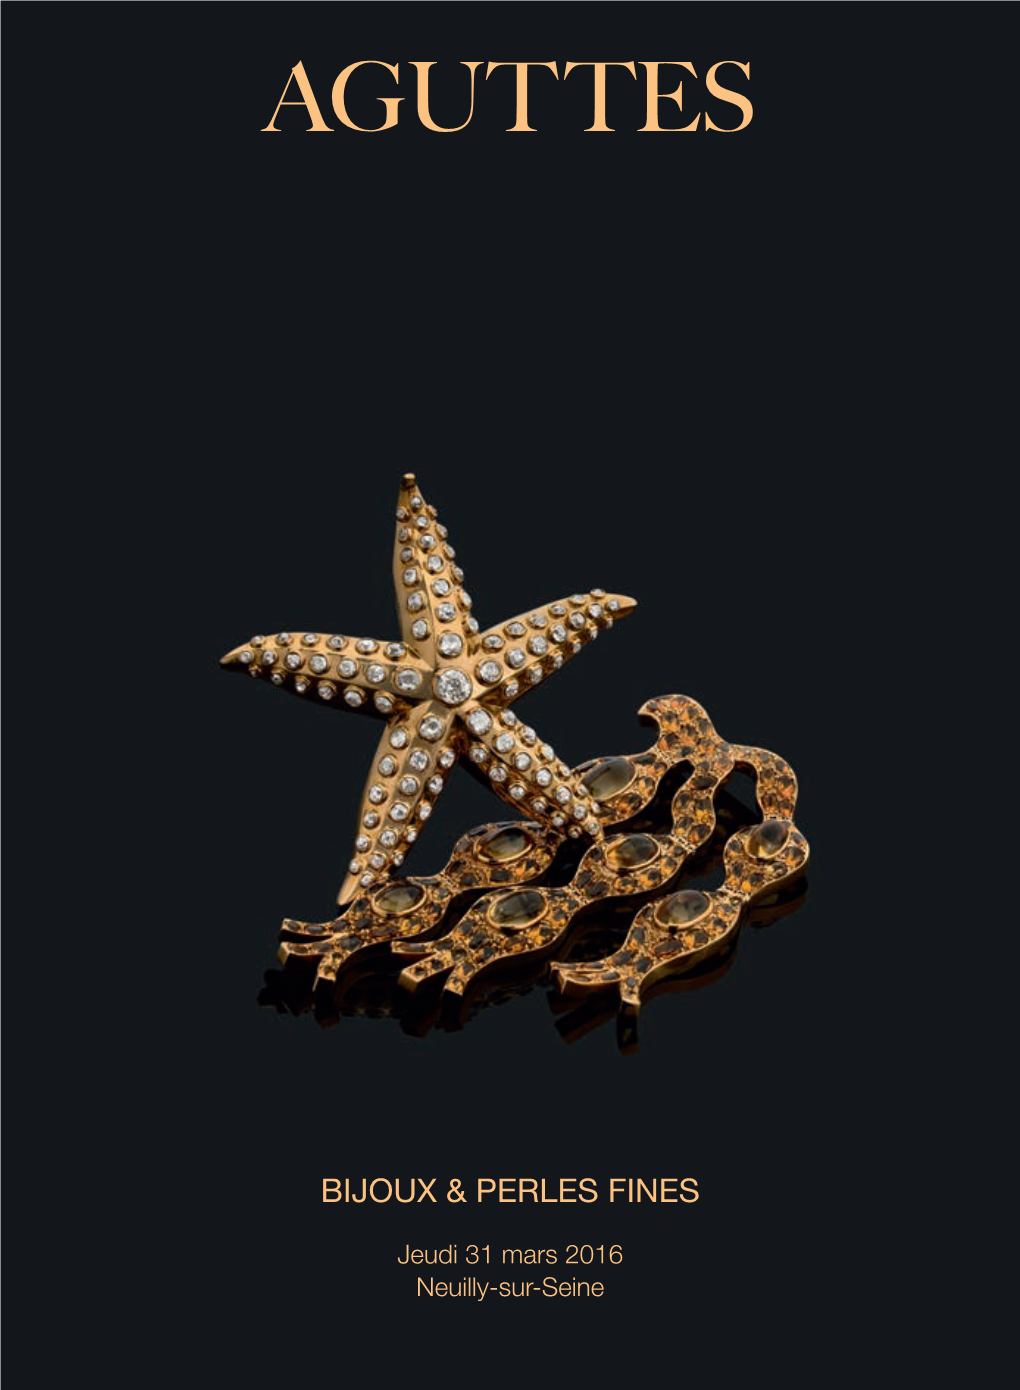 Bijoux & Perles Fines